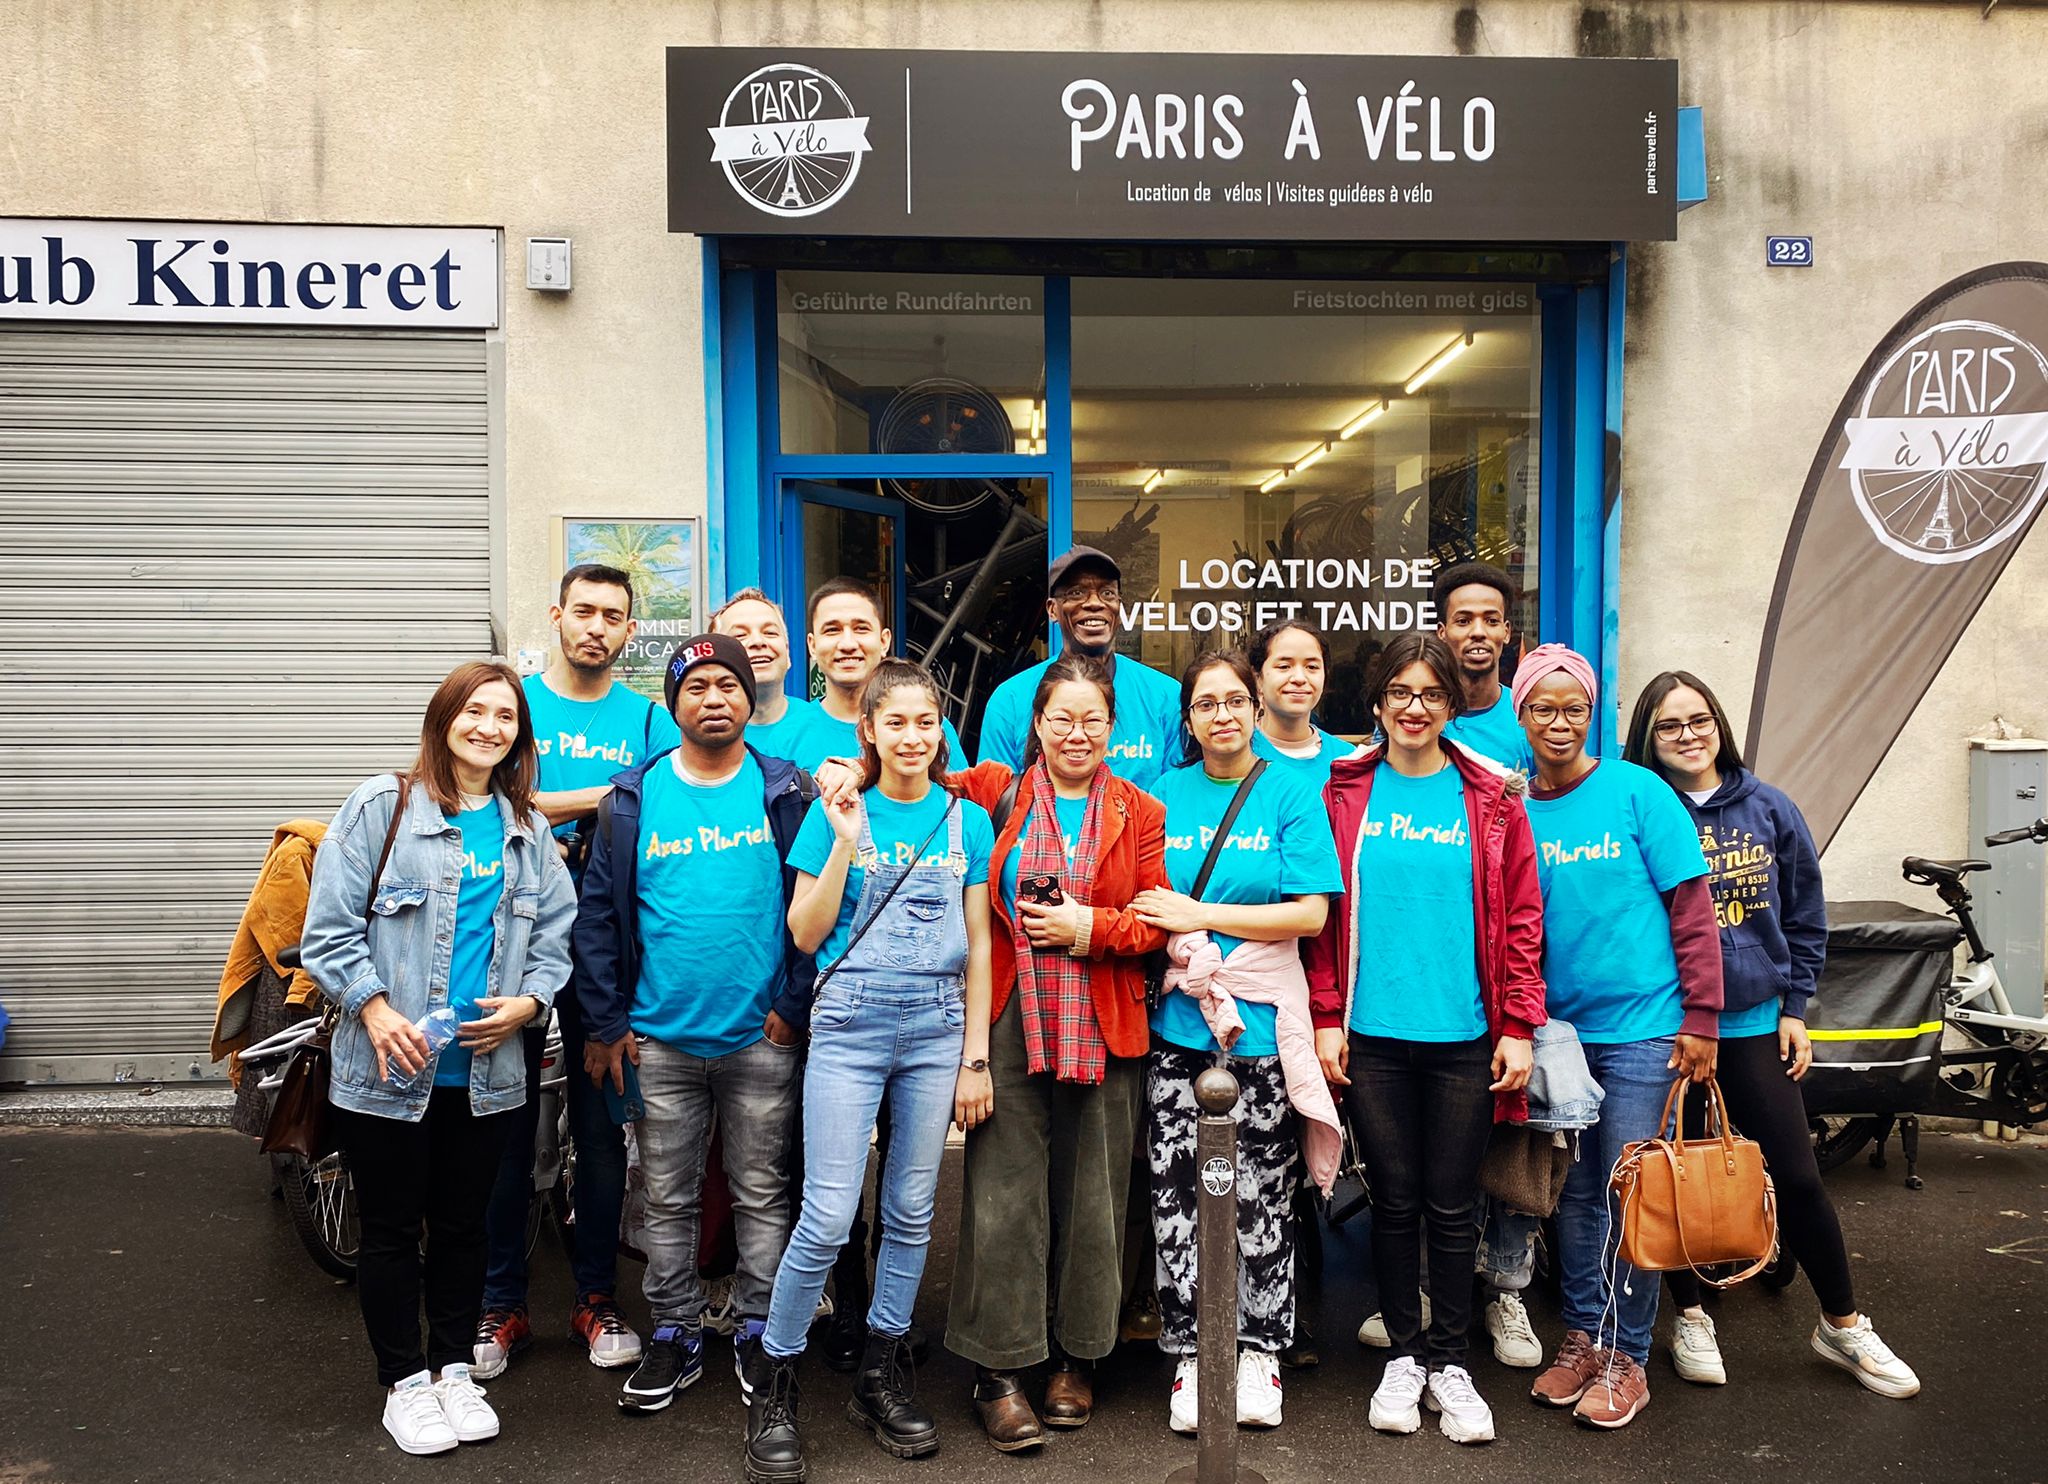 Sortie découverte de la ville de Paris en vélo devant la boutique Paris à vélo